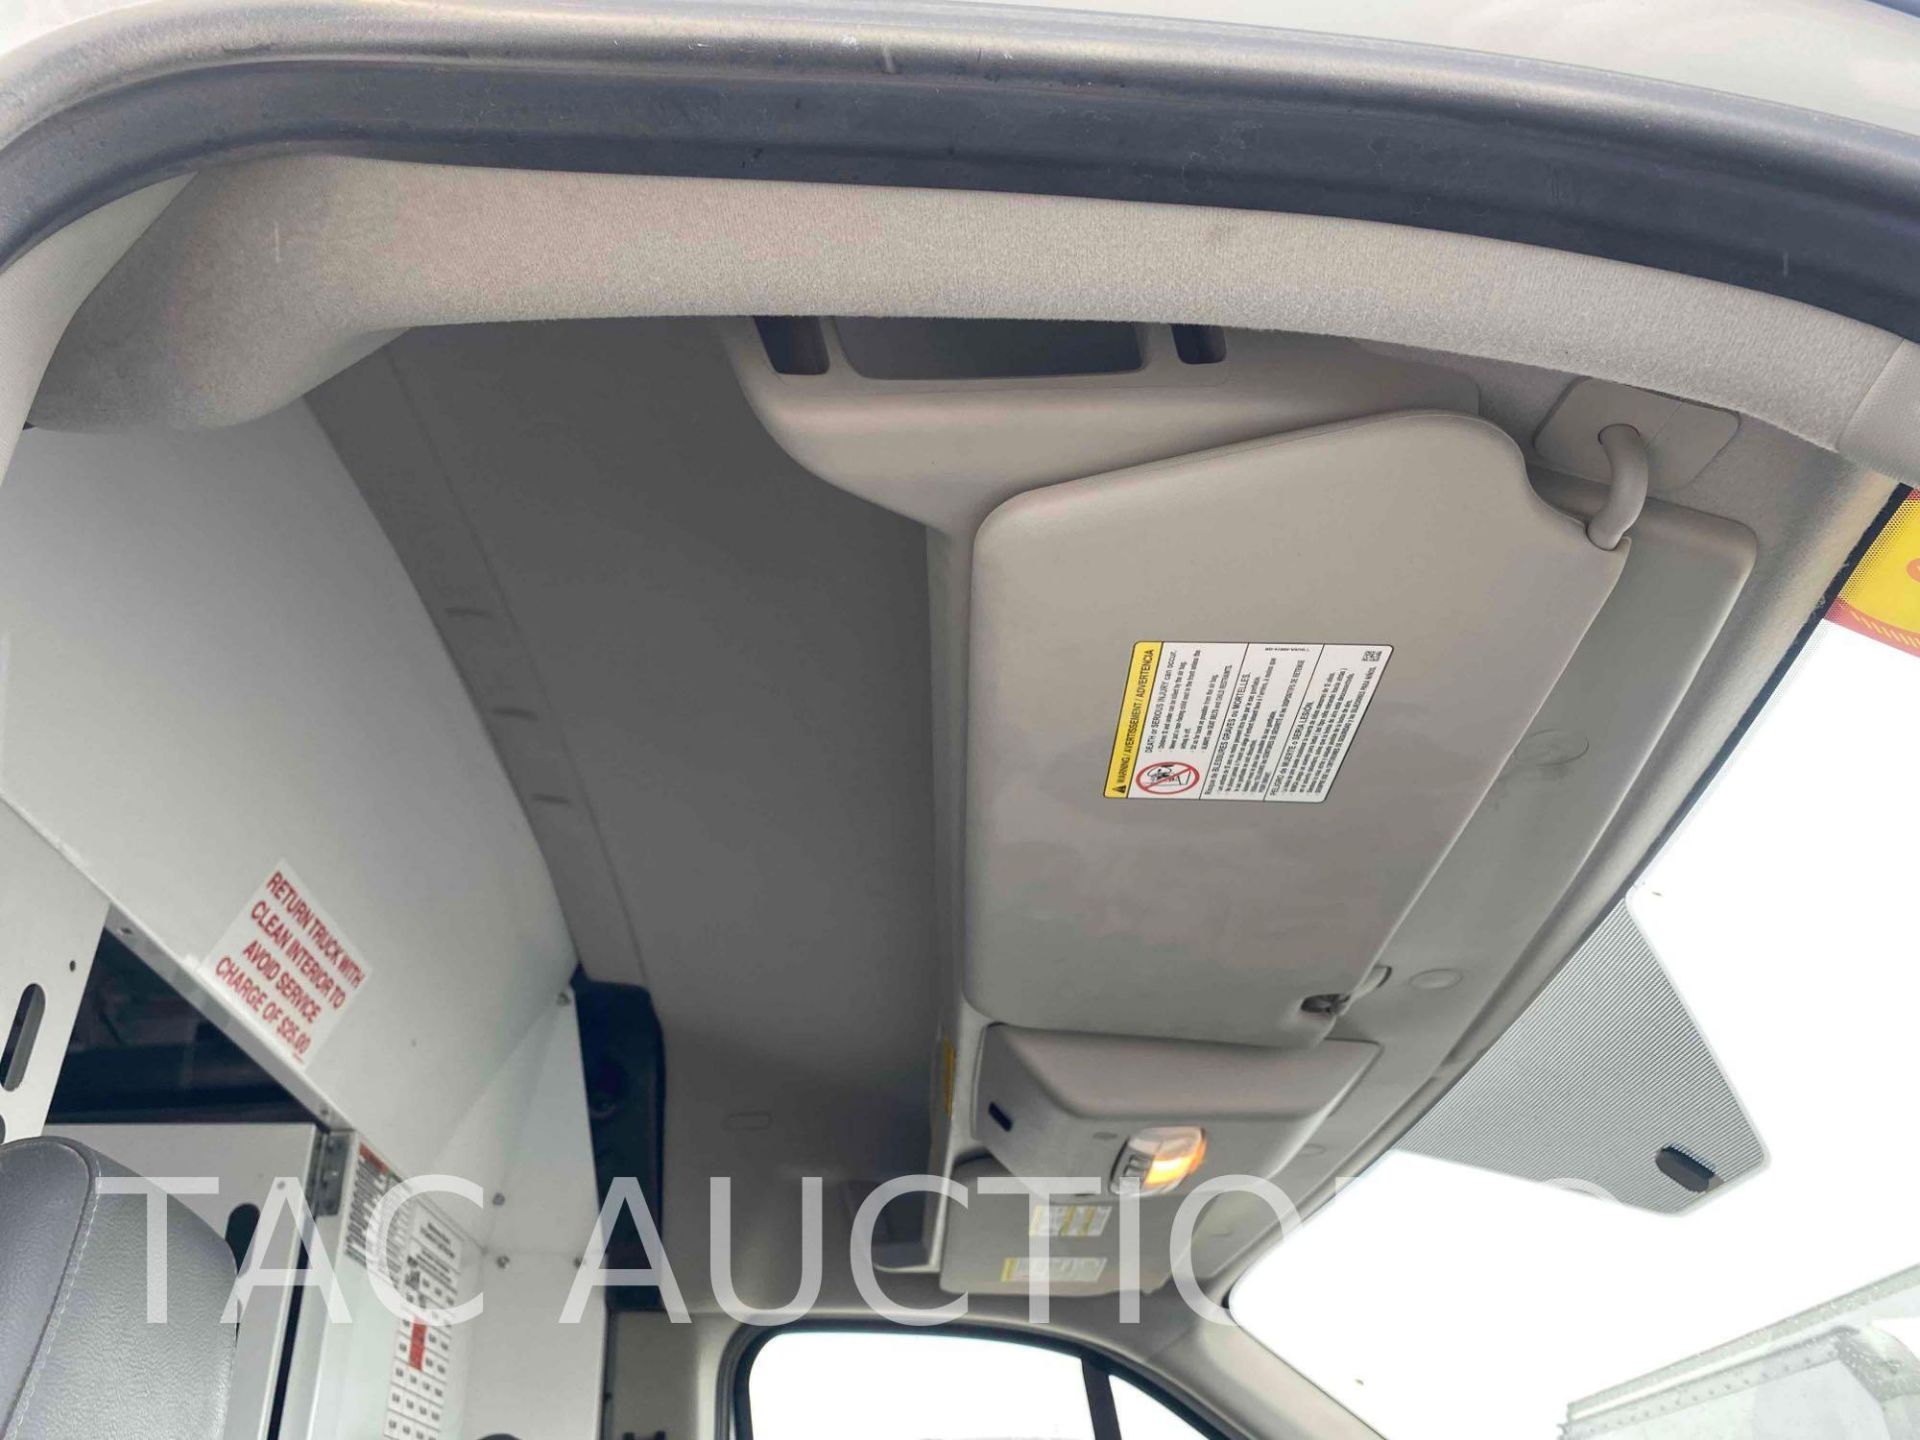 2019 Transit 150 Cargo Van - Image 23 of 50